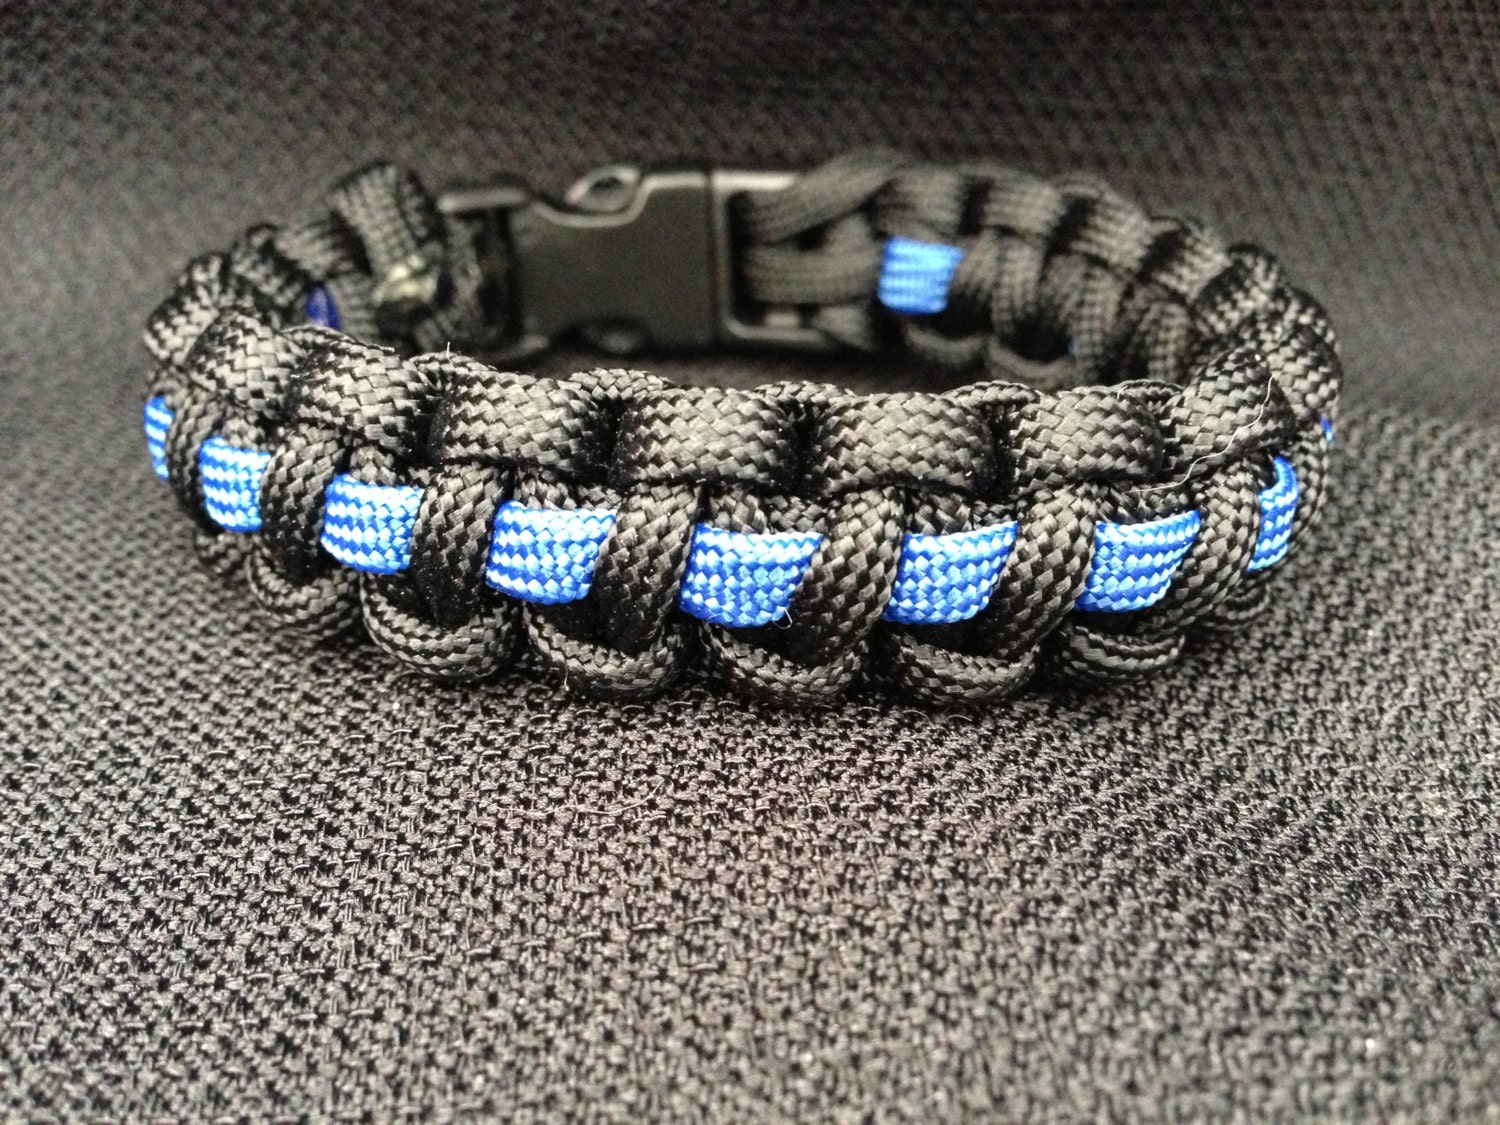 Amazon.com: ciqa Survival paracord bracelet Police Thin Blue Line Size 6.5